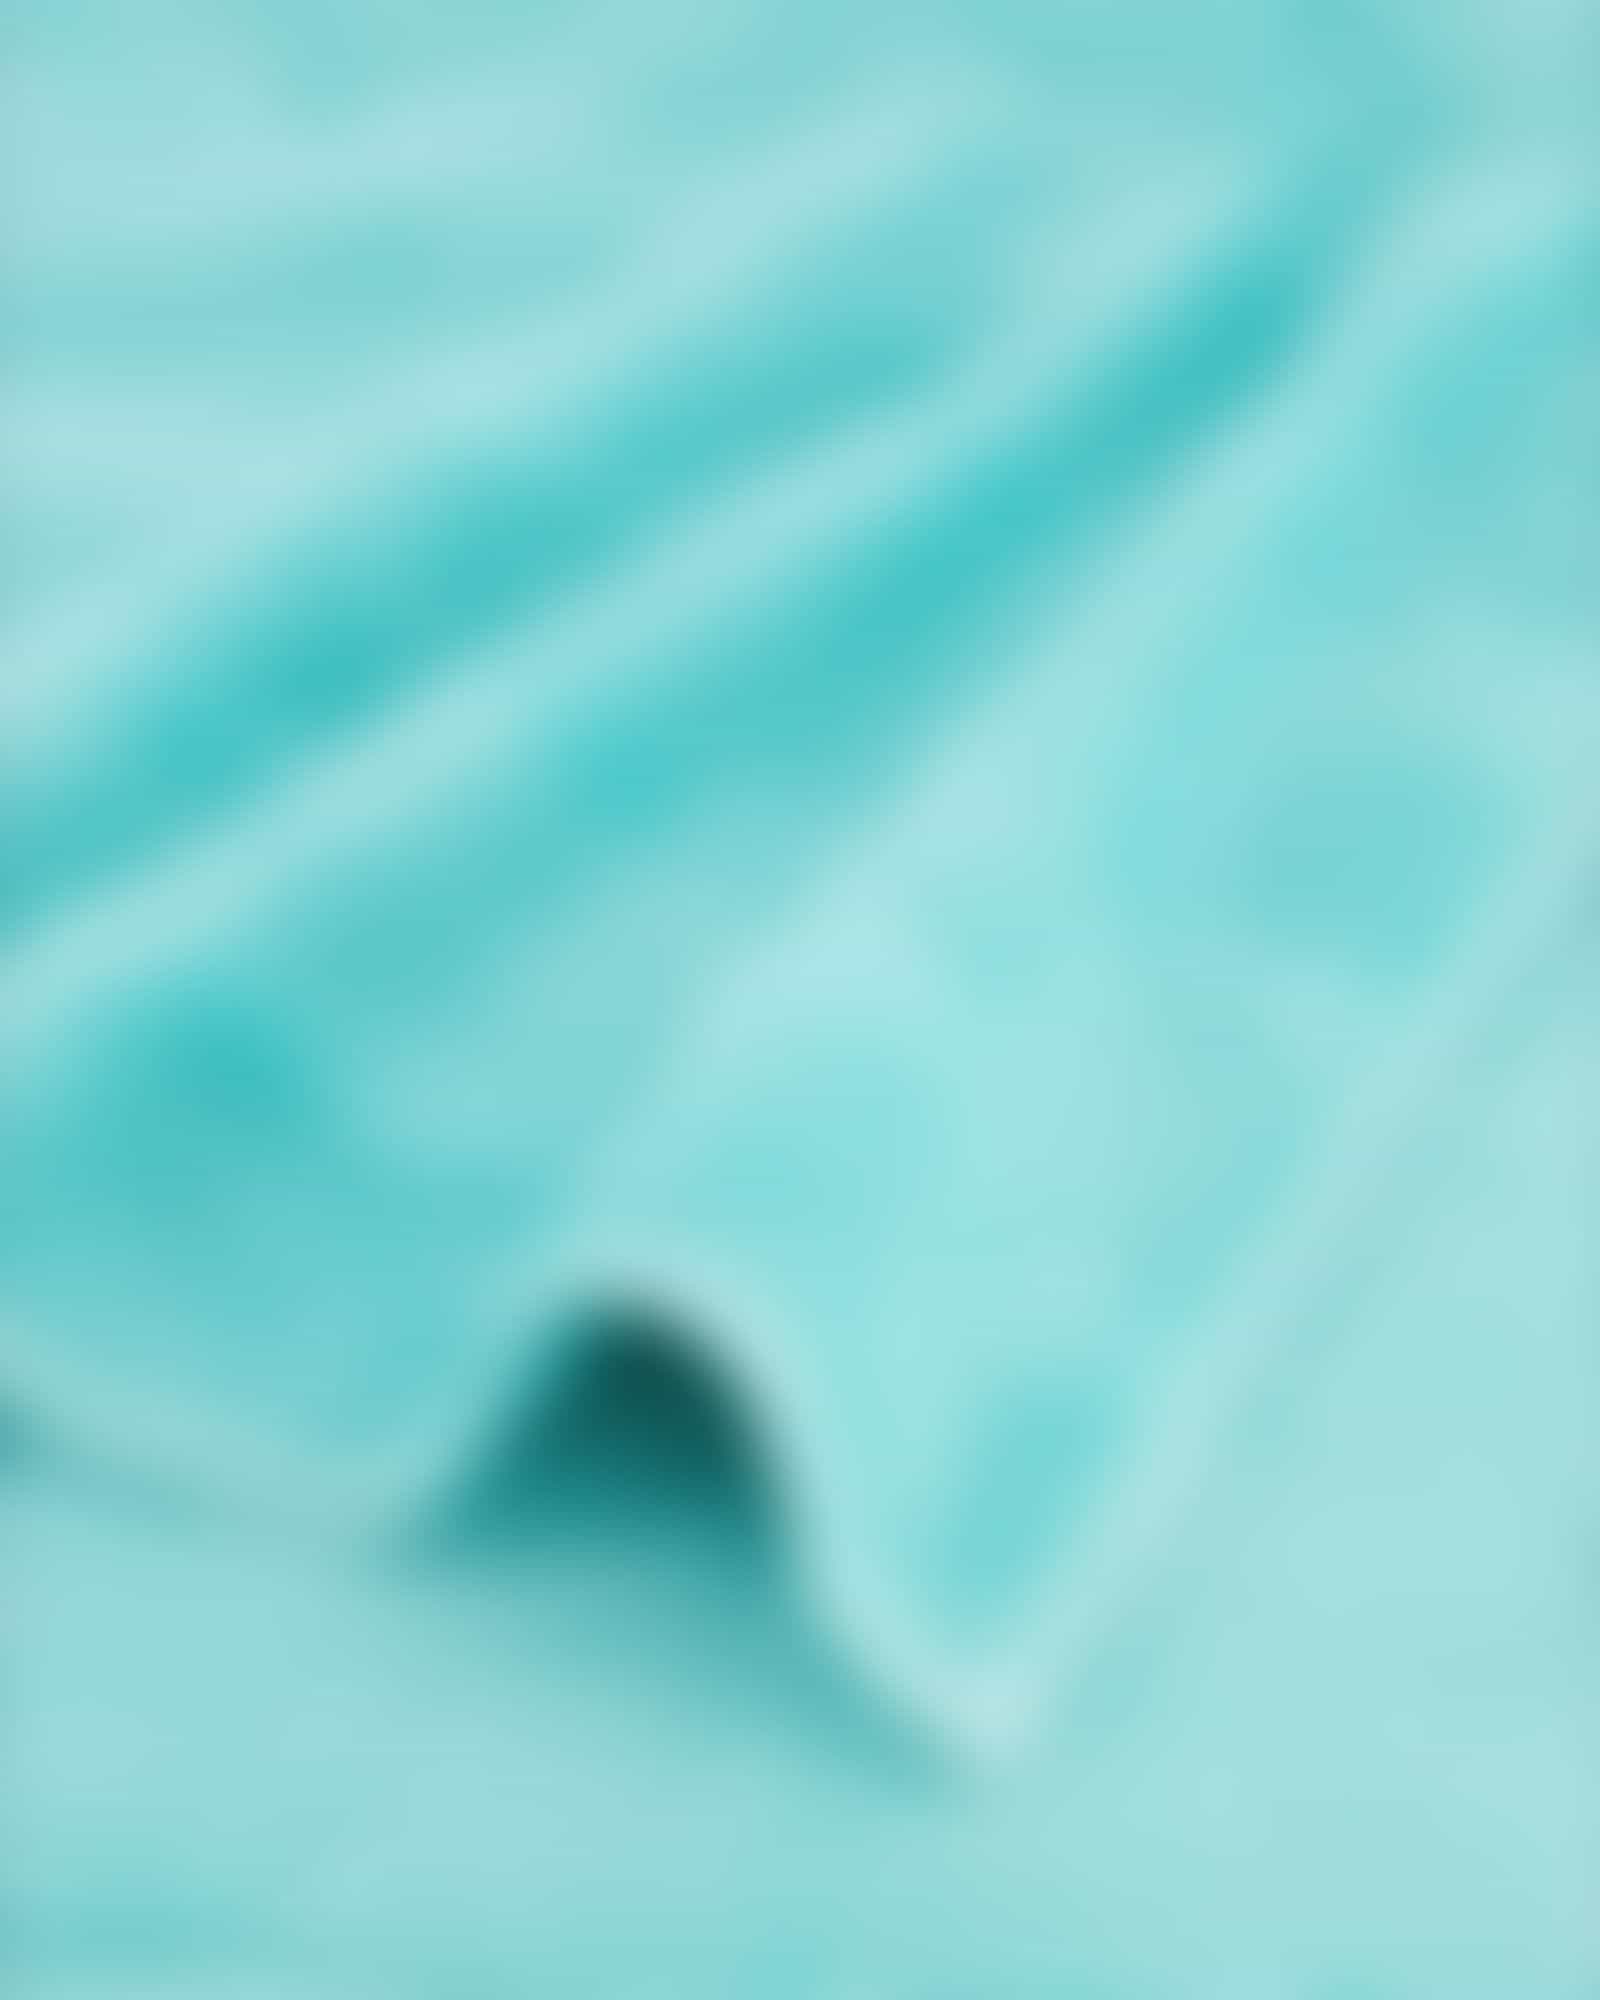 Cawö - Noblesse2 1002 - Farbe: 404 - mint - Seiflappen 30x30 cm